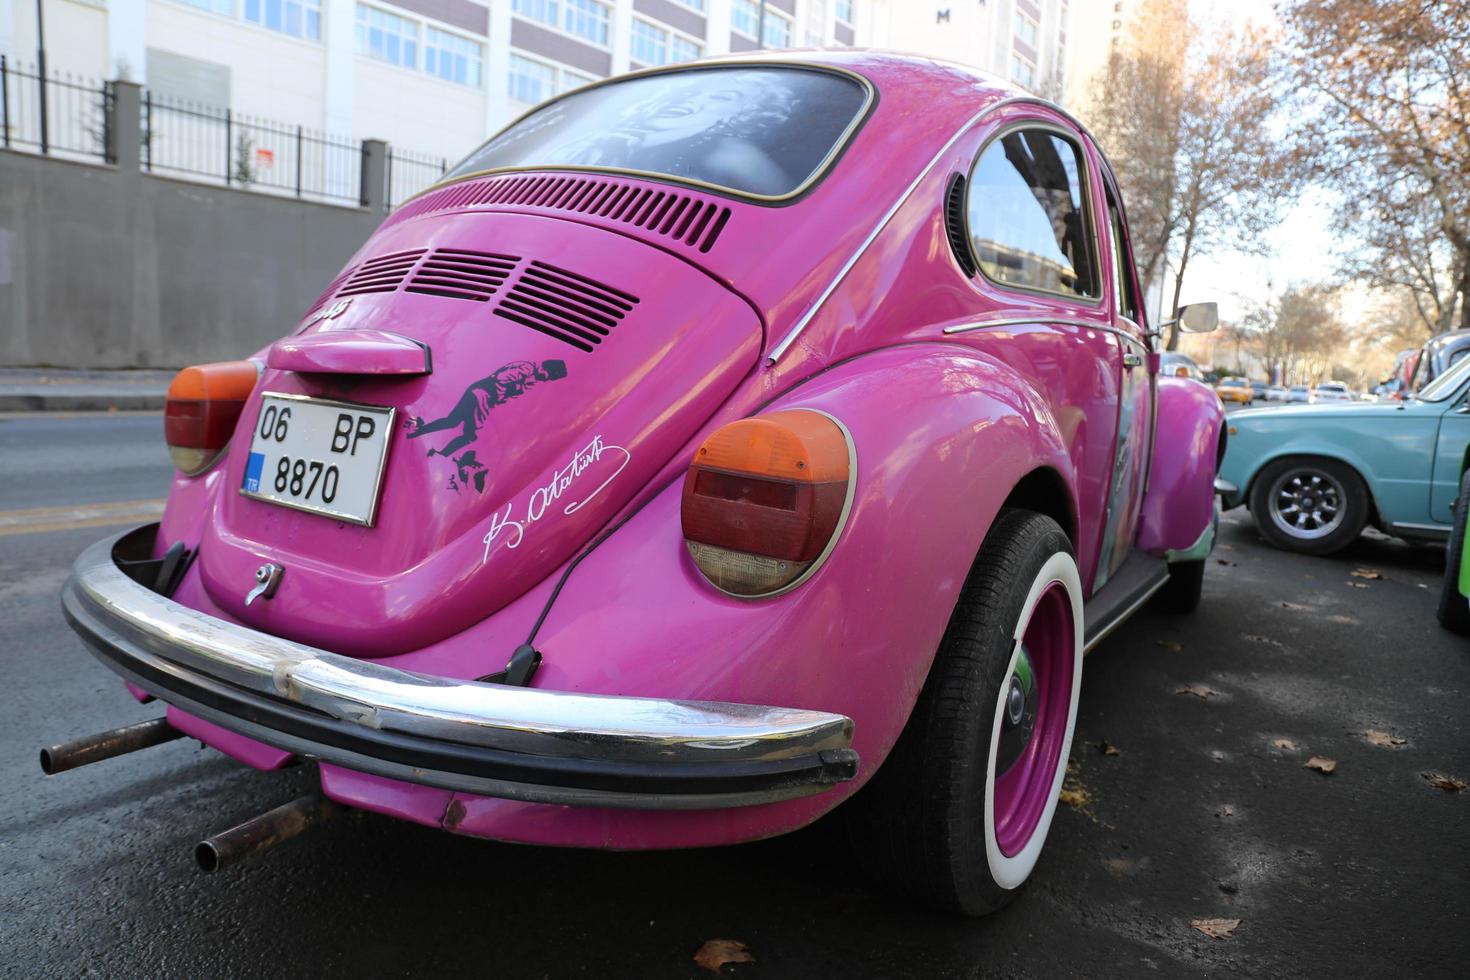 roze auto auto's volkswagen klassiek voorraad foto